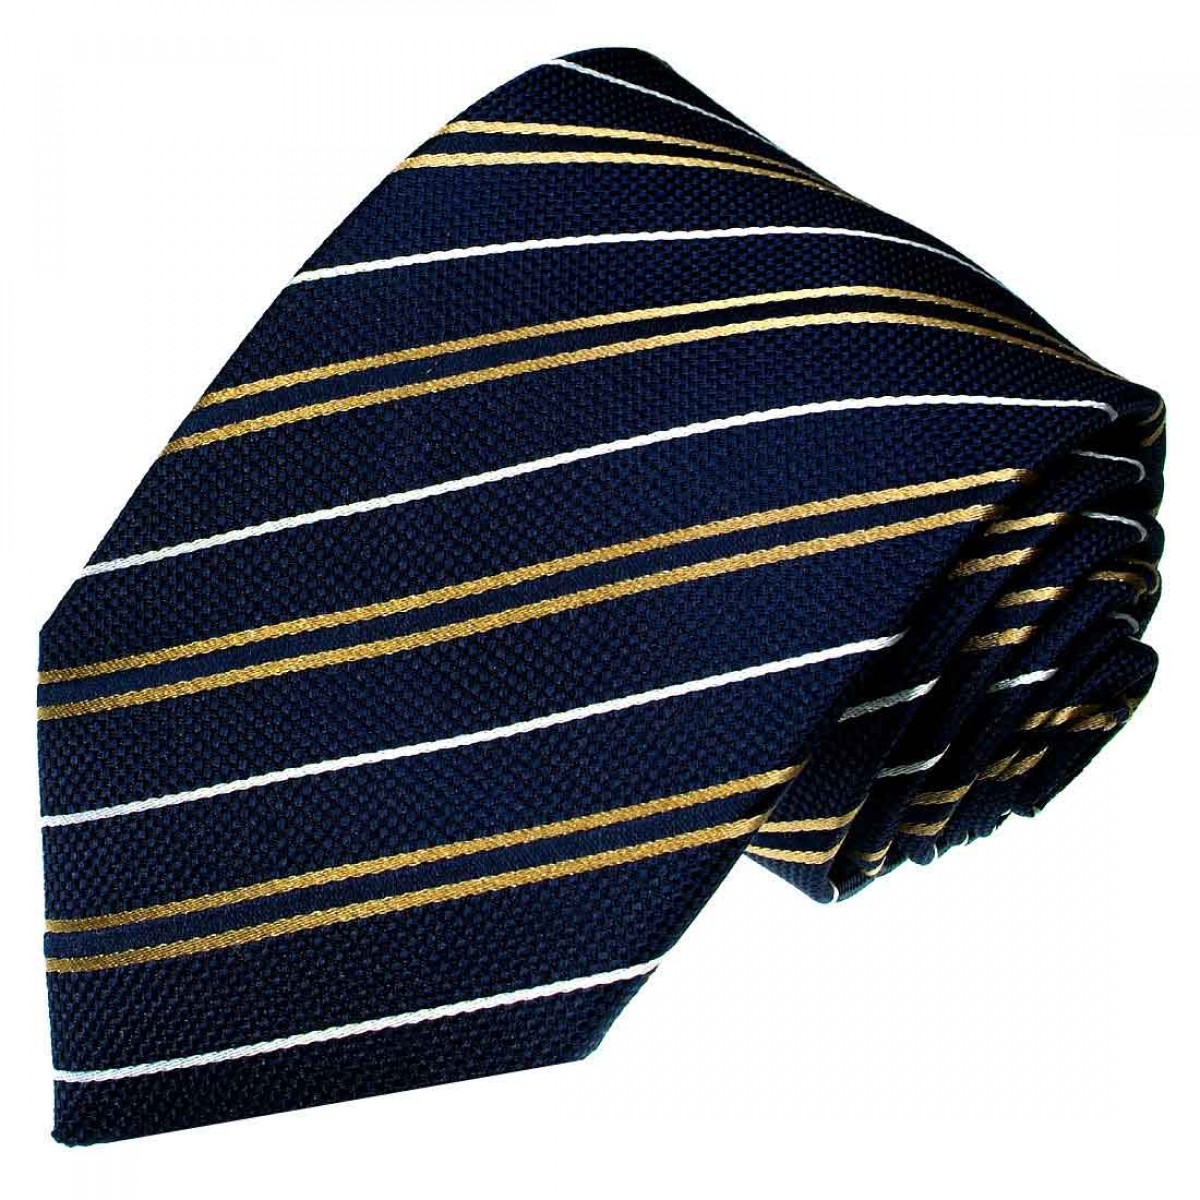 Marken Set aus 100% Seide Streifen Barockmuster Krawatte mit Einstecktuch gruen petrol schwarz 8450101 Lorenzo Cana